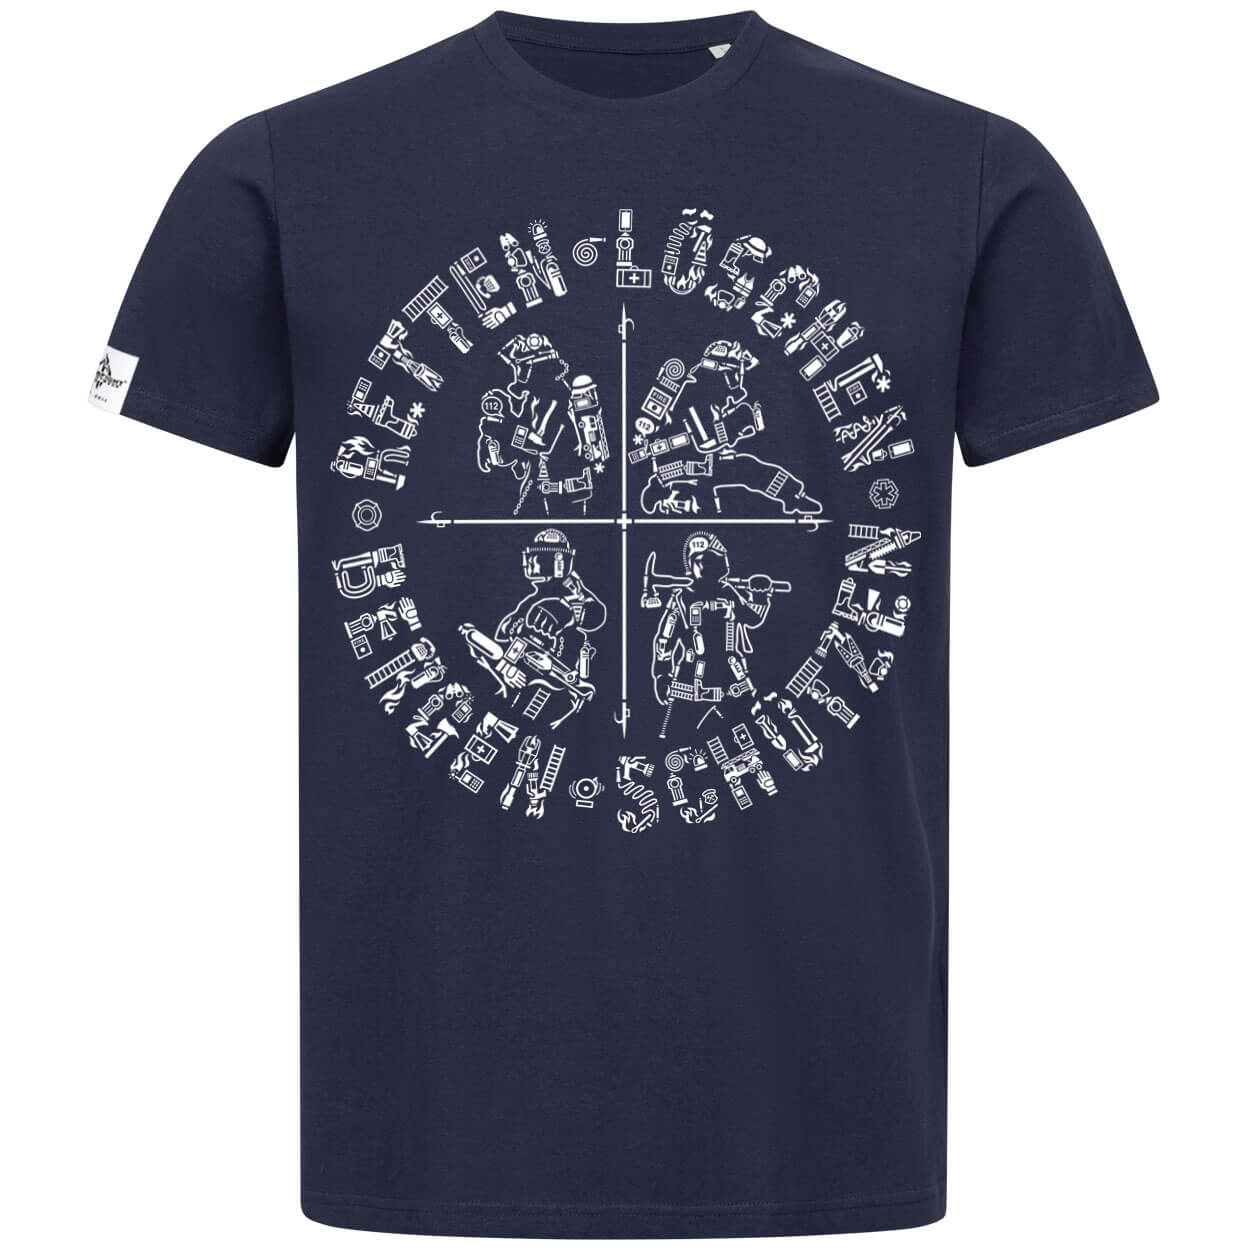 Retten Löschen Bergen Schützen - Männer T-Shirt